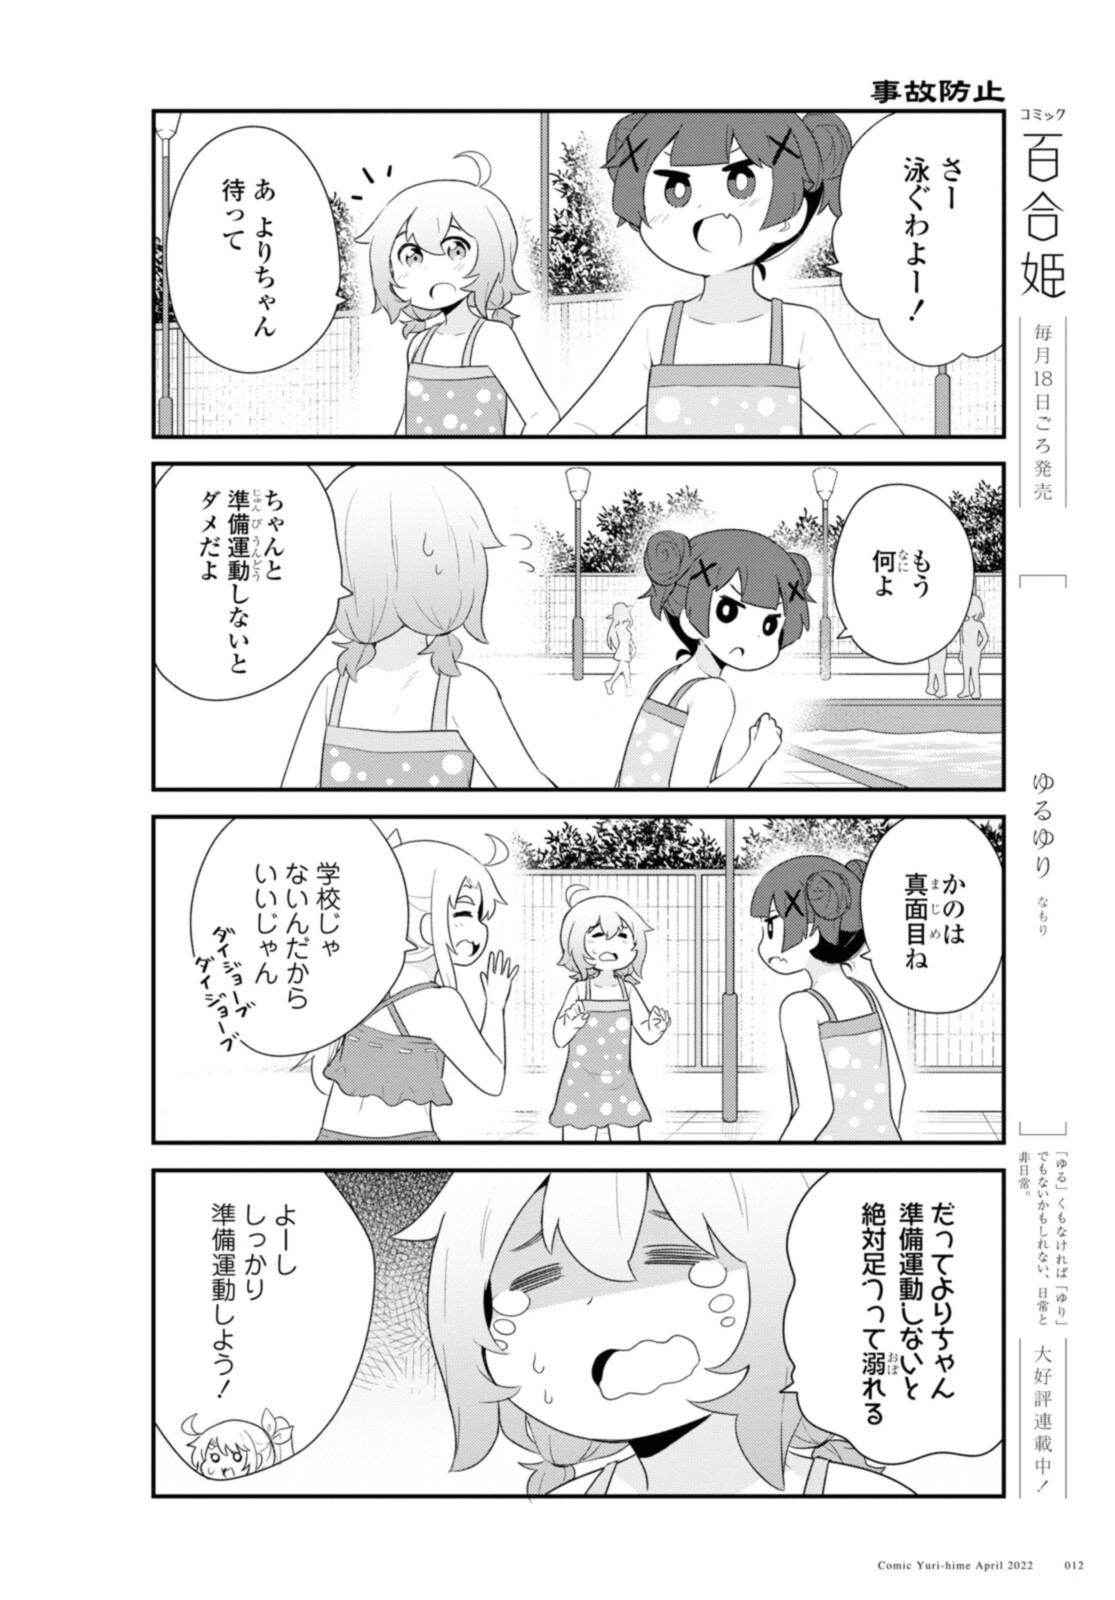 Watashi ni Tenshi ga Maiorita! - Chapter 94.1 - Page 8